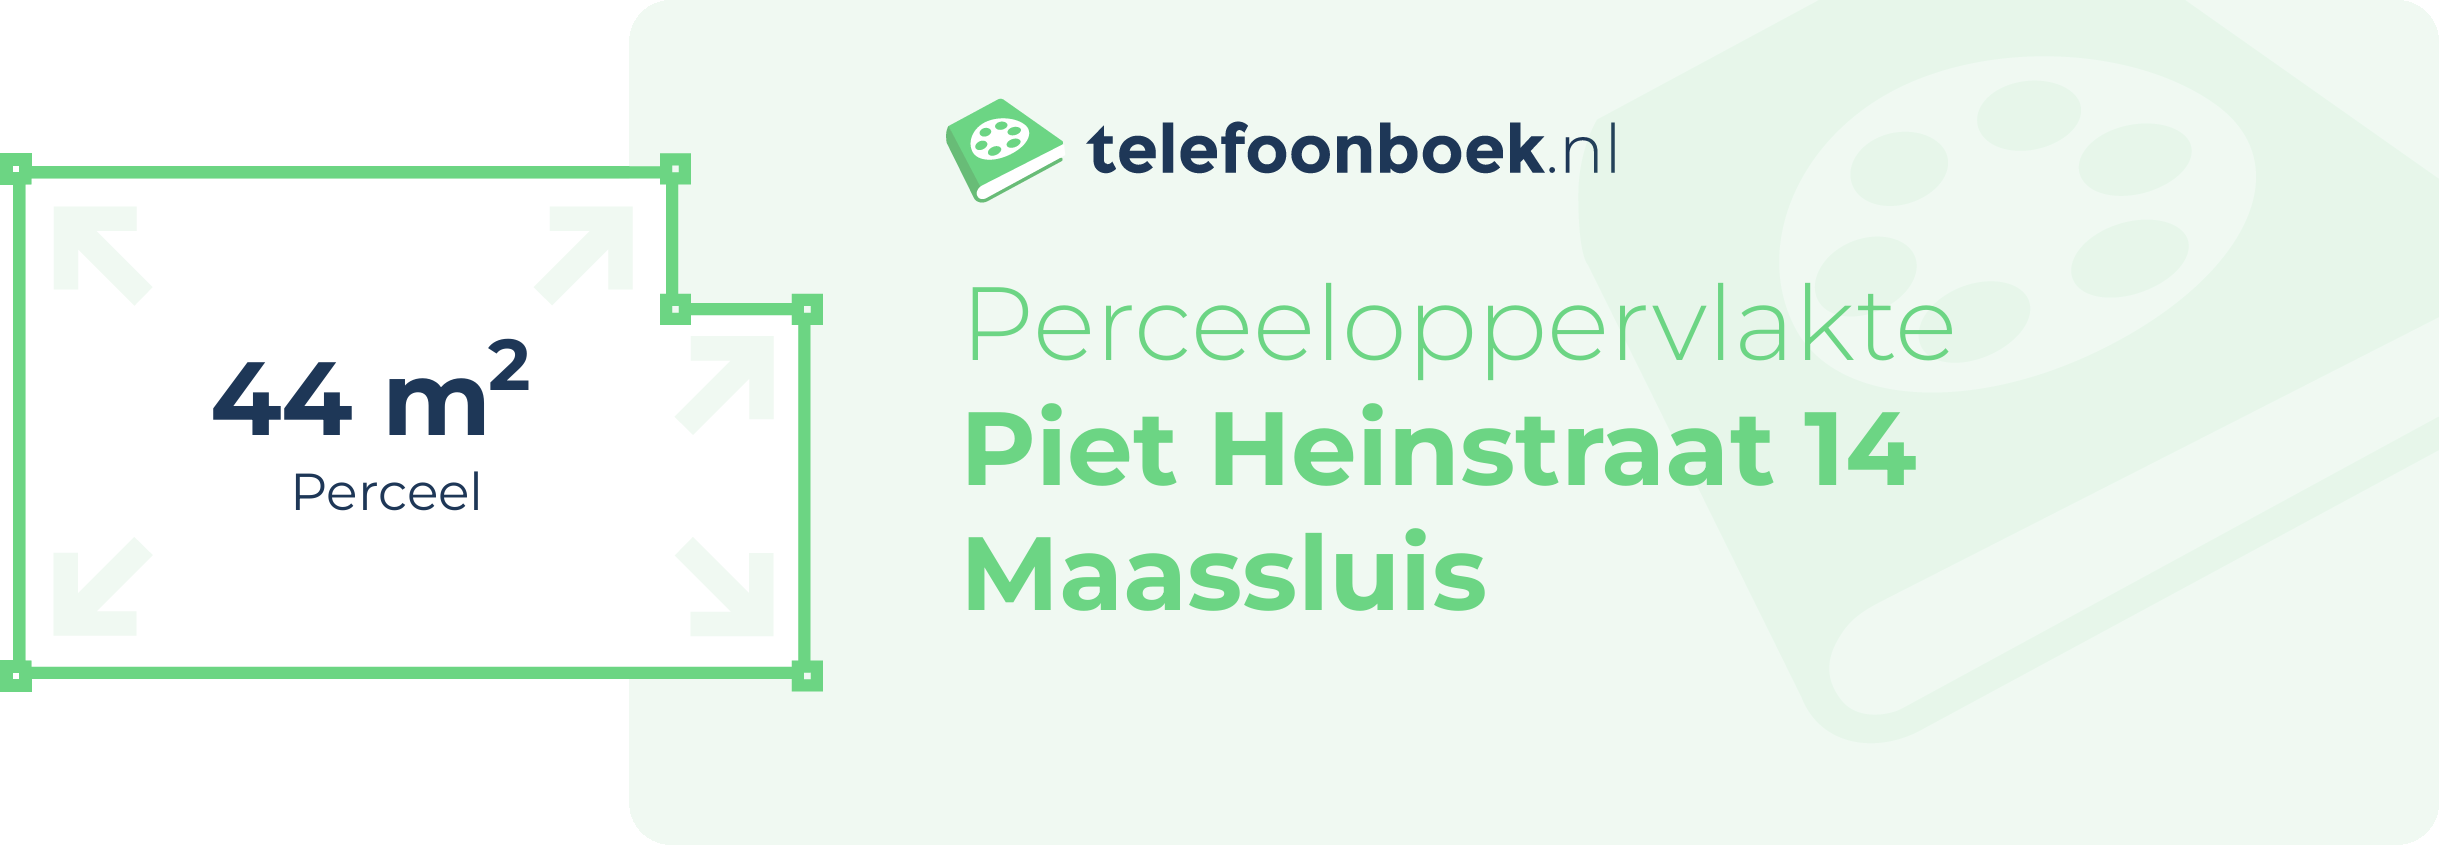 Perceeloppervlakte Piet Heinstraat 14 Maassluis